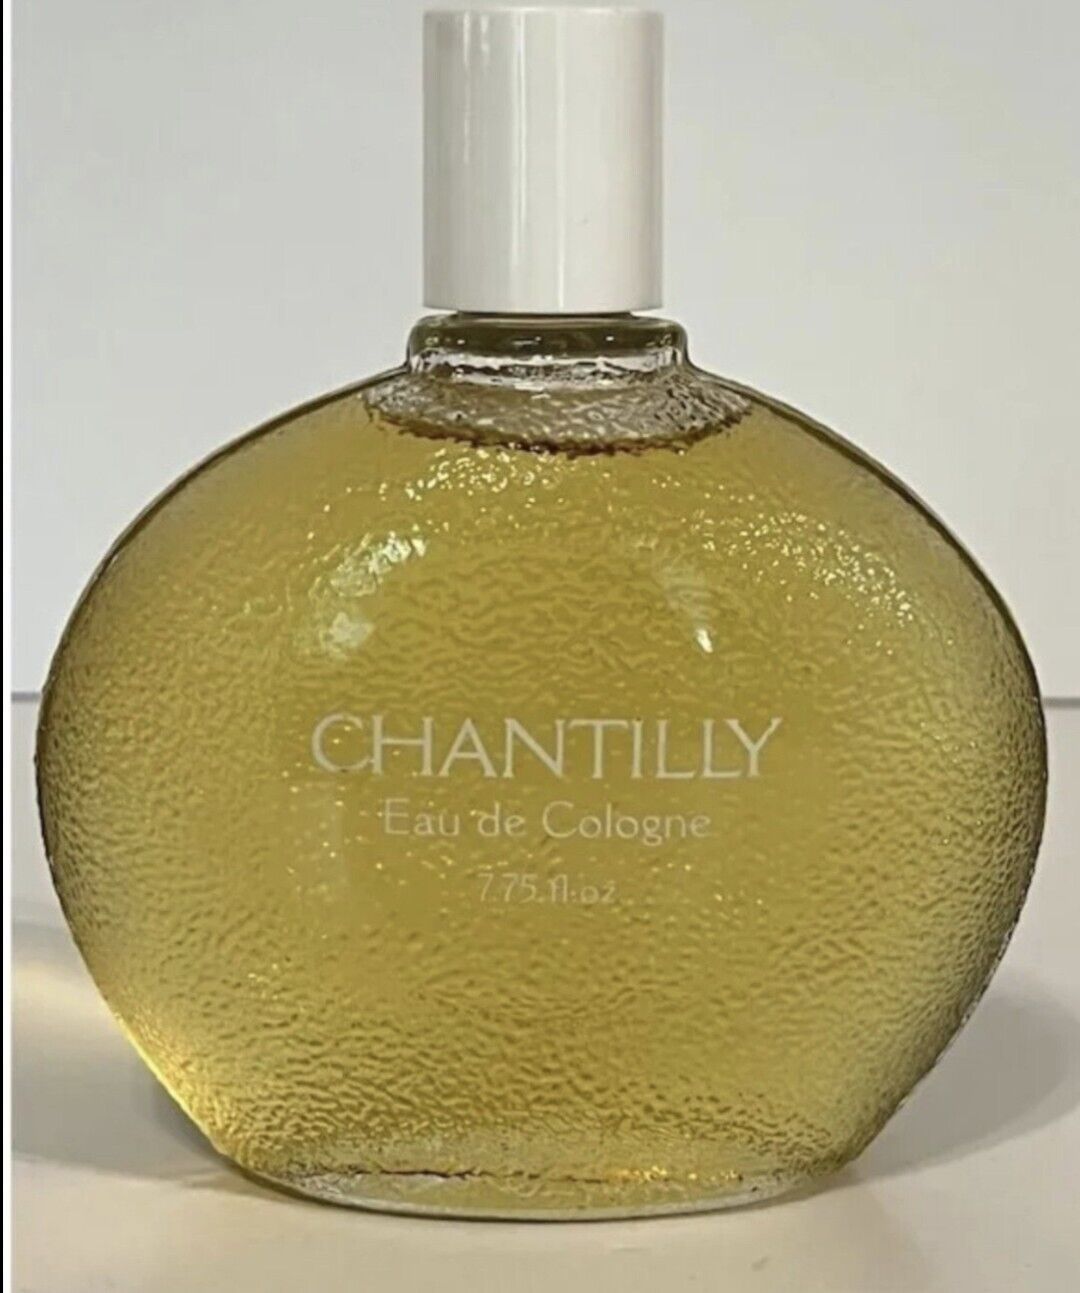 Vintage Houbigant Chantilly Eau De Cologne 7.75 Oz Perfume Splash Textured Glass